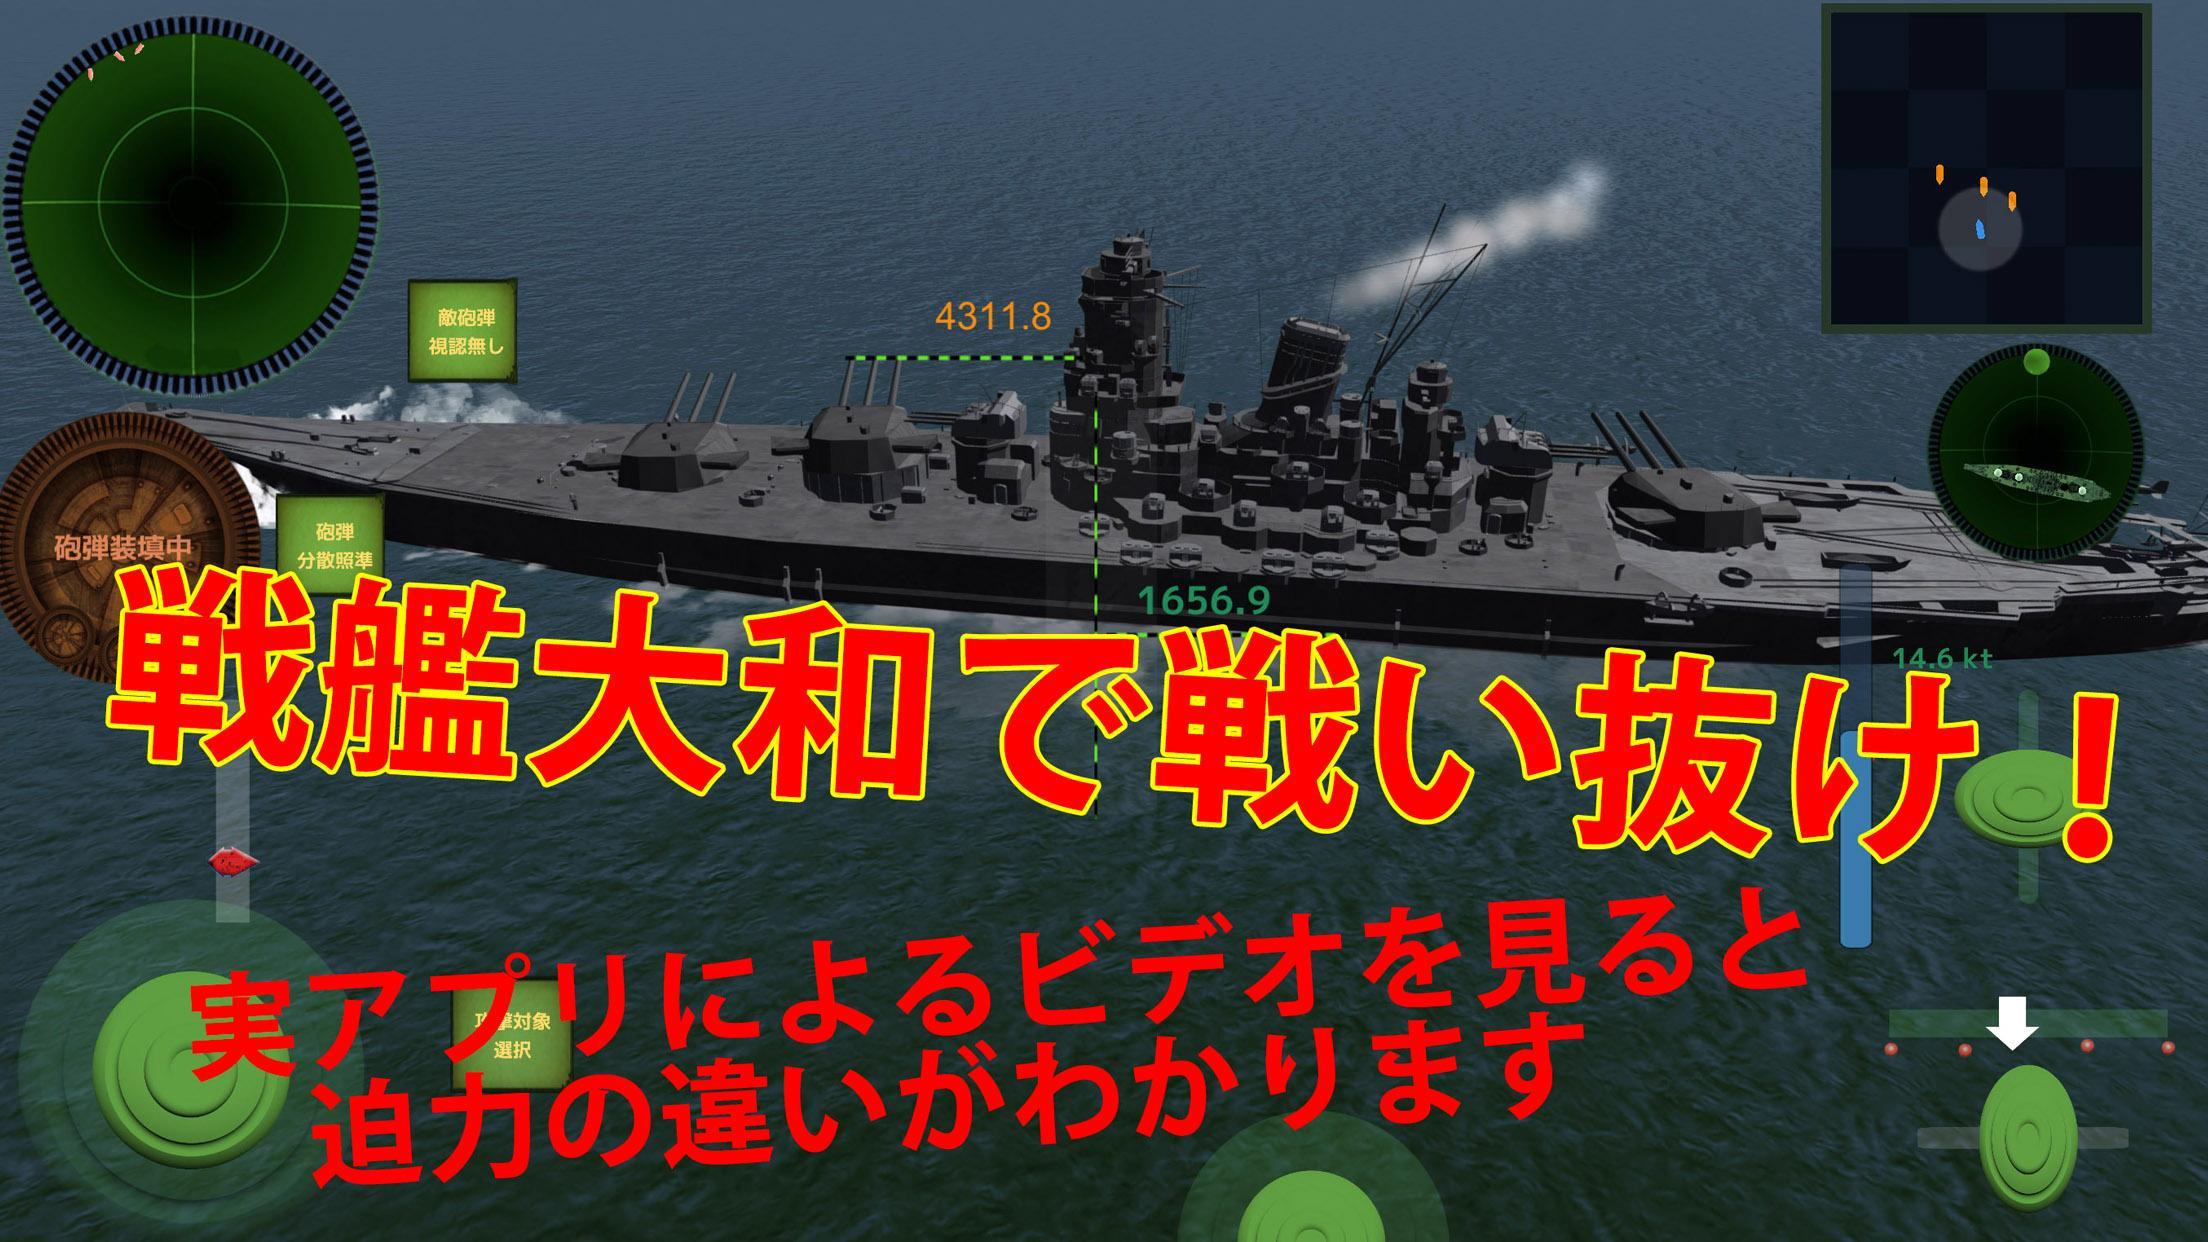 Screenshot 1 of Battleship-Ace Battle - Destro 